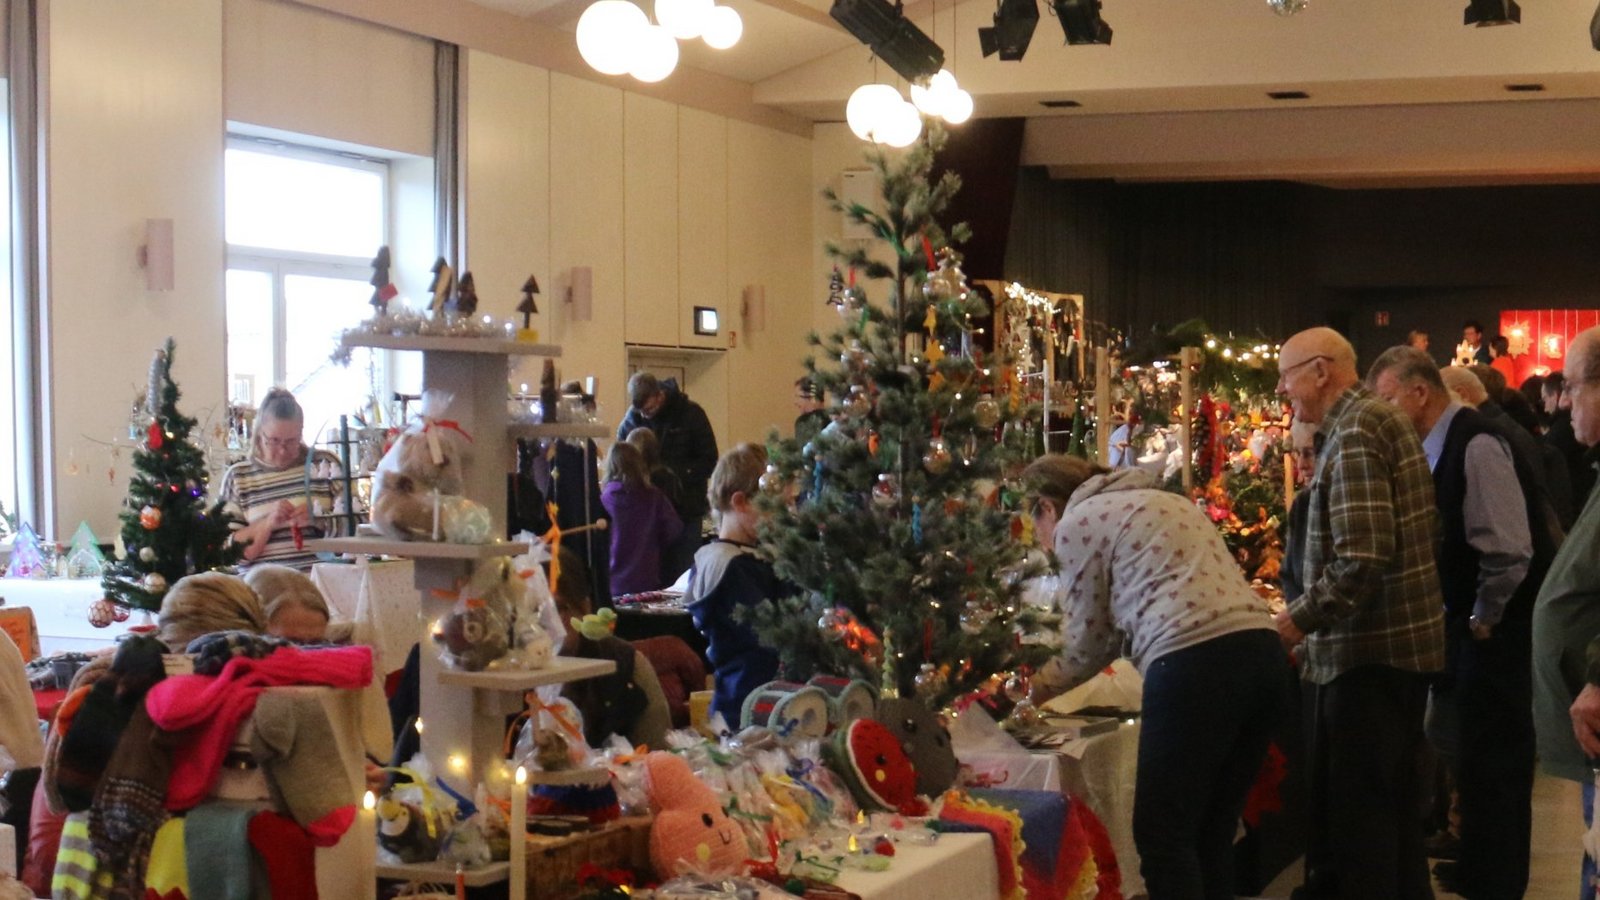 Eine vorweihnachtliche Atmosphäre zieht mit dem Hobbykünstlermarkt in die Oberriexinger Festhalle ein.  Fotos: Rücker